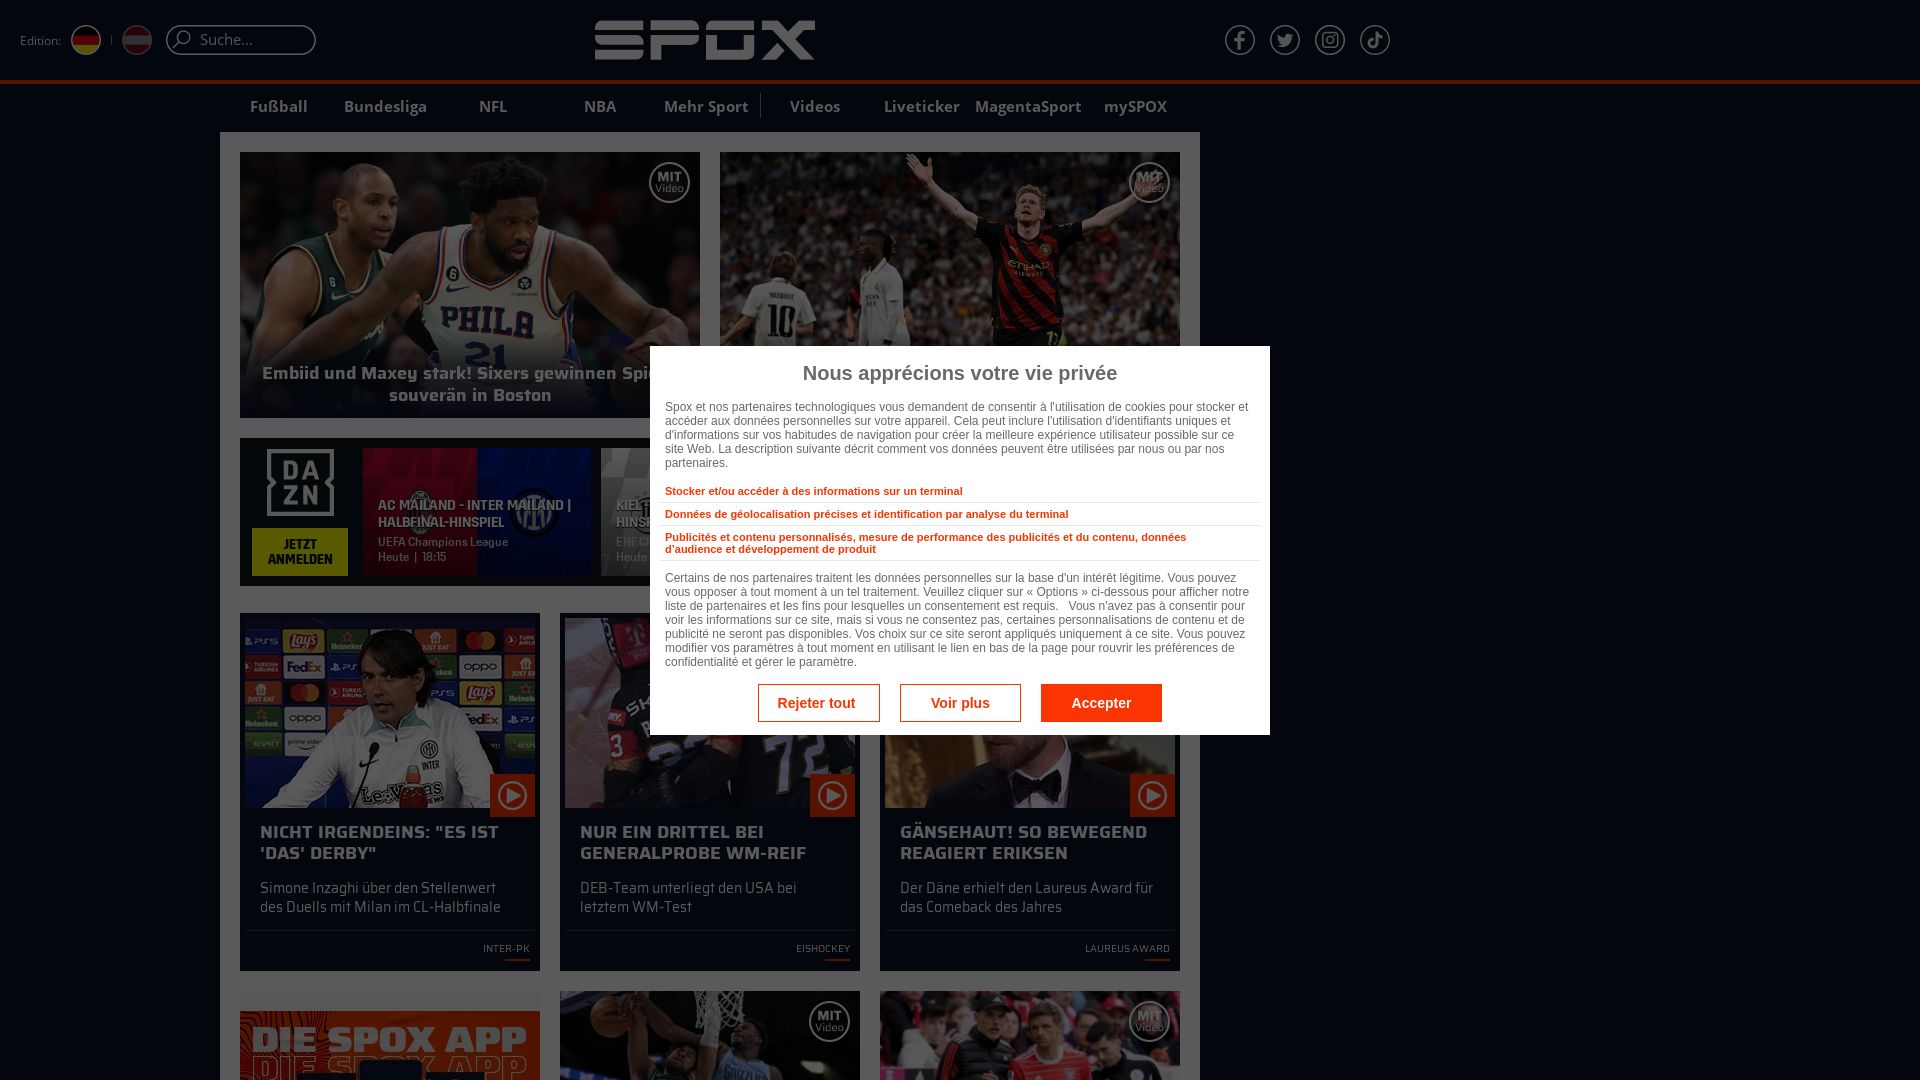 Status do site spox.com está   ONLINE